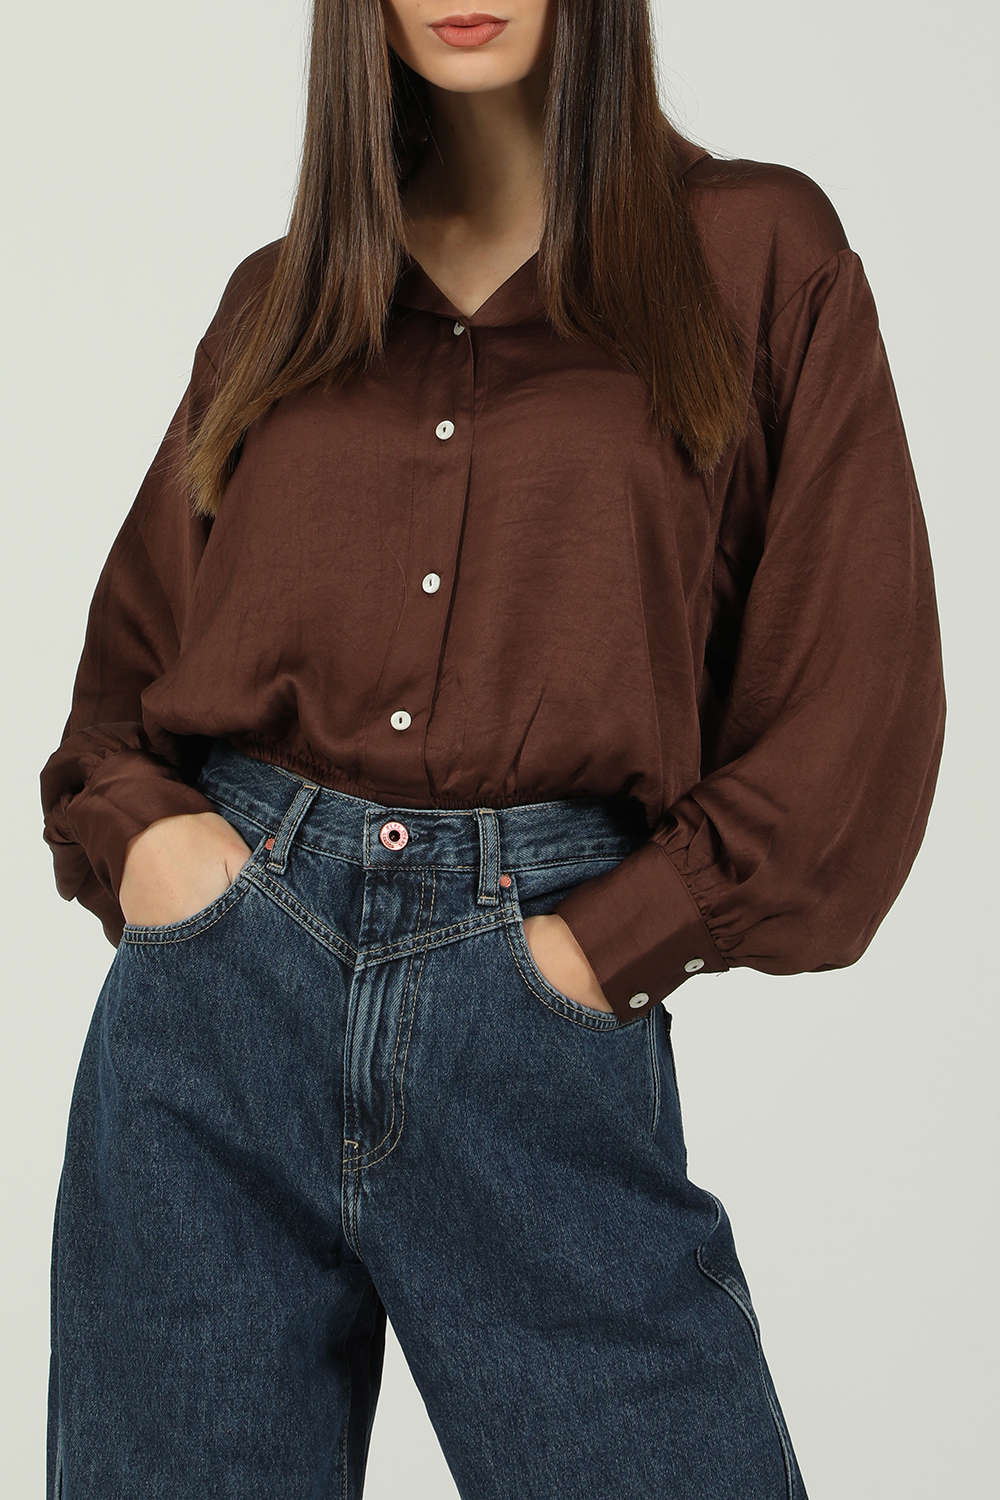 Γυναικεία/Ρούχα/Πουκάμισα/Μακρυμάνικα AMERICAN VINTAGE - Γυναικείο πουκάμισο AMERICAN VINTAGE WID06C σοκολατί